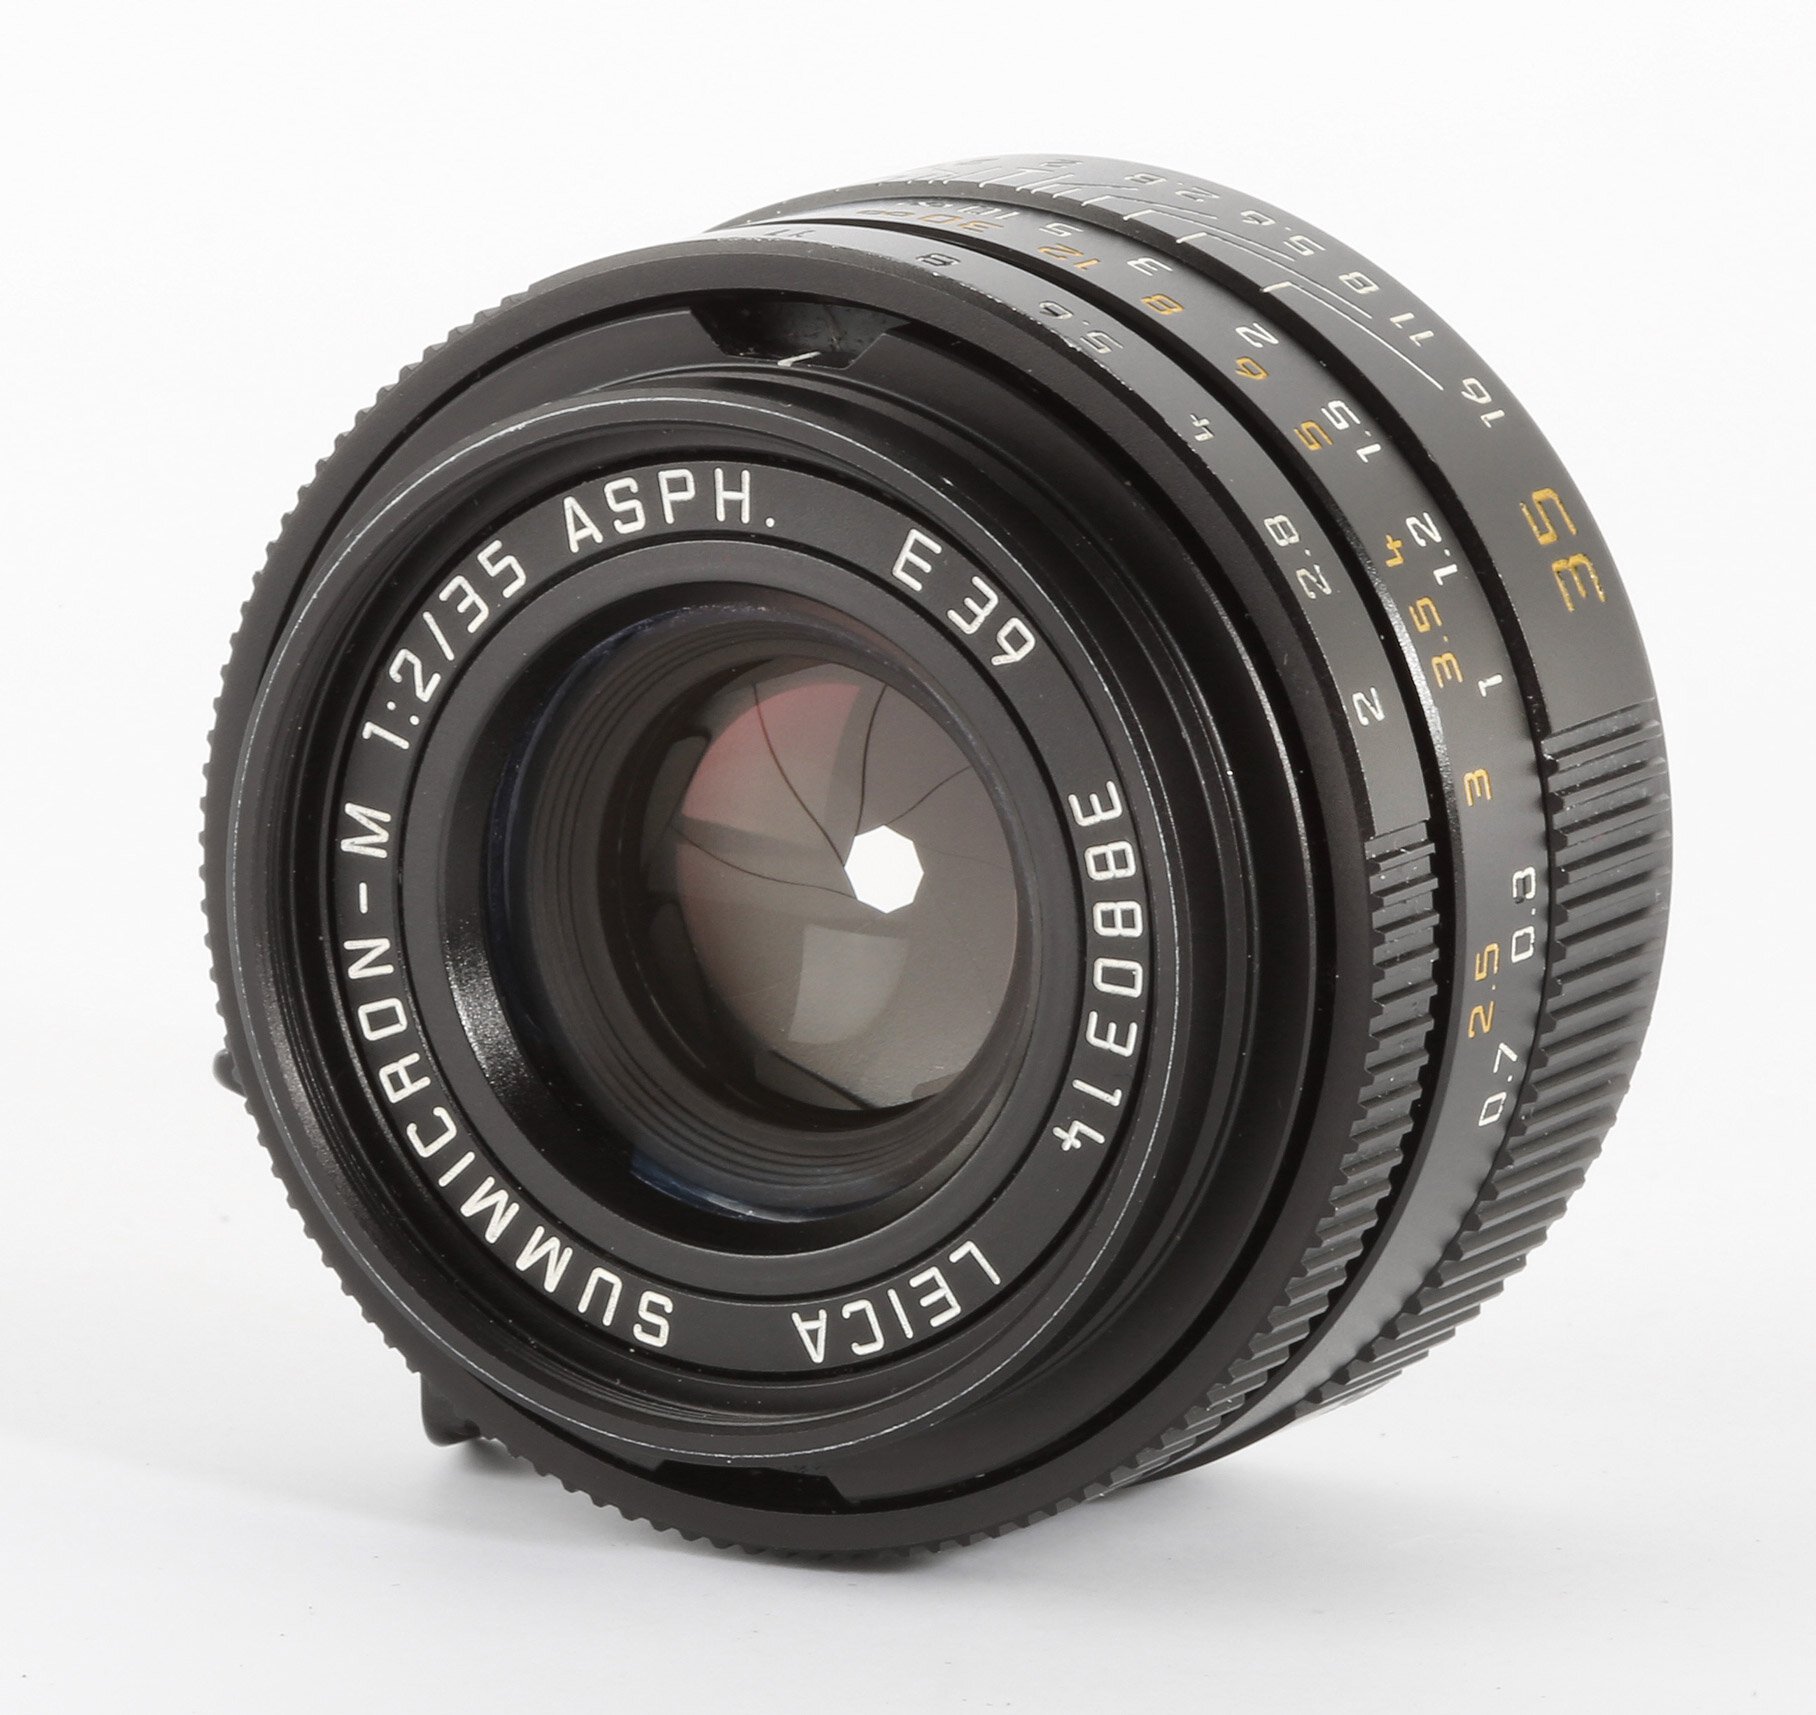 Leica Summicron-M 35mm f/2 ASPH. 11879 schwarz